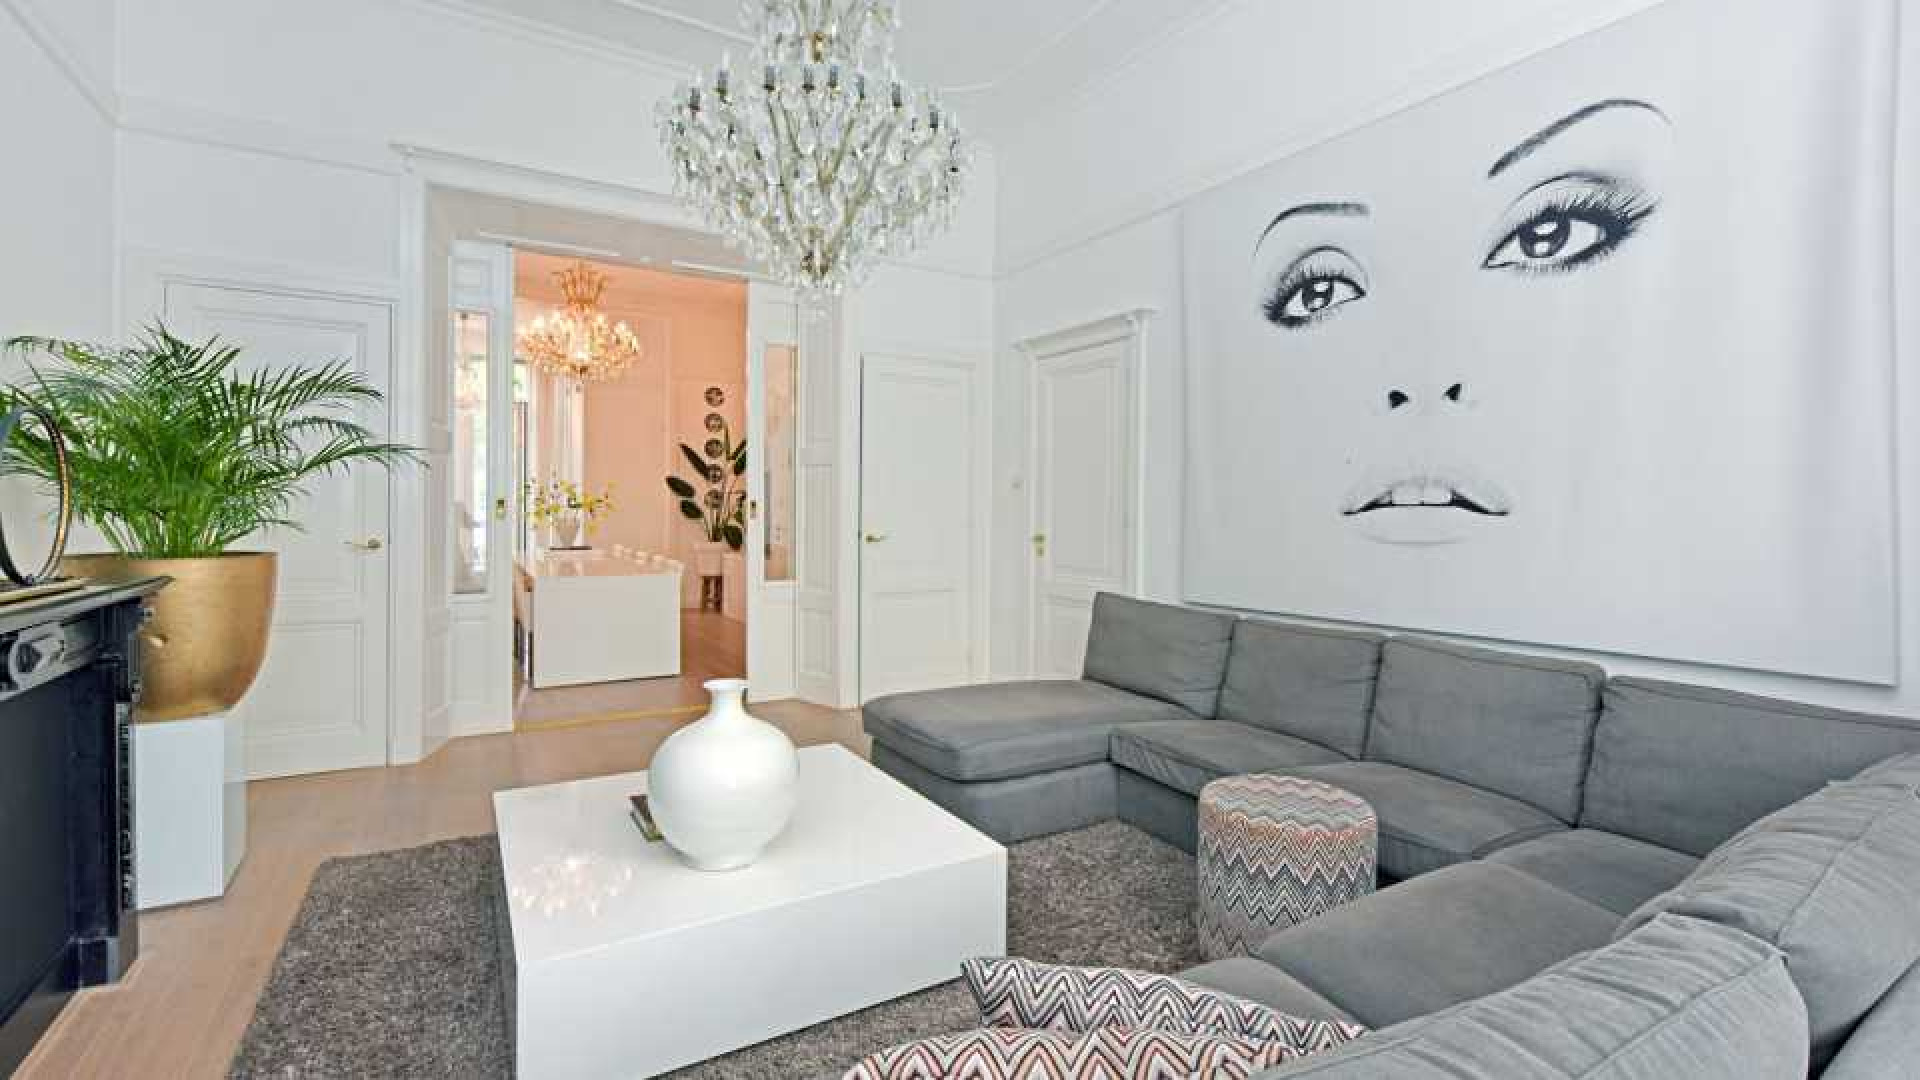 Nieuwe liefde Leontine Borsato casht tonnen euro's na verkoop scheidingshuis. Zie foto's